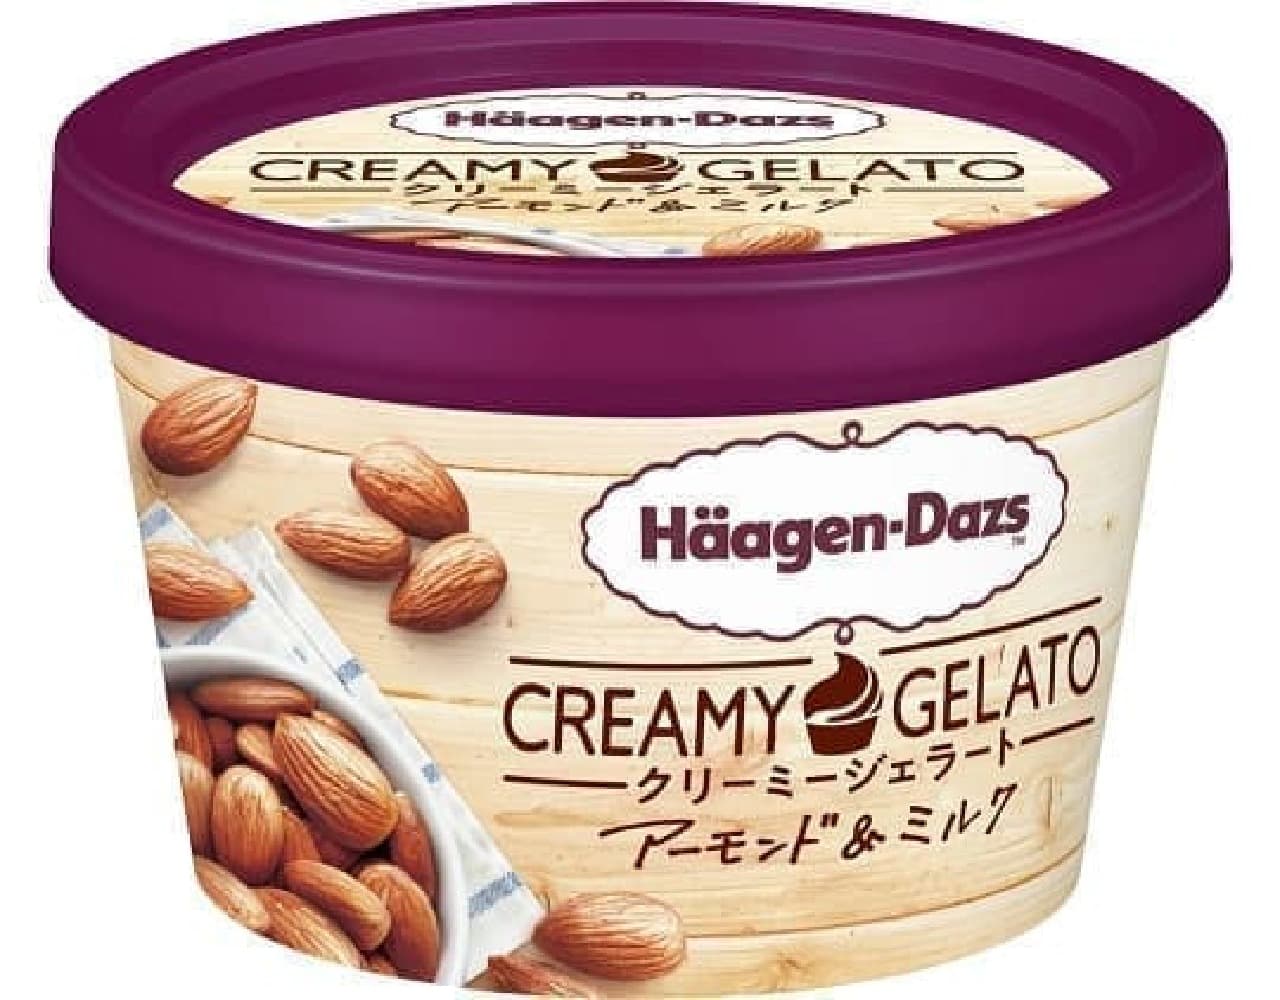 Haagen-Dazs "Creamy Gelato Almond & Milk"